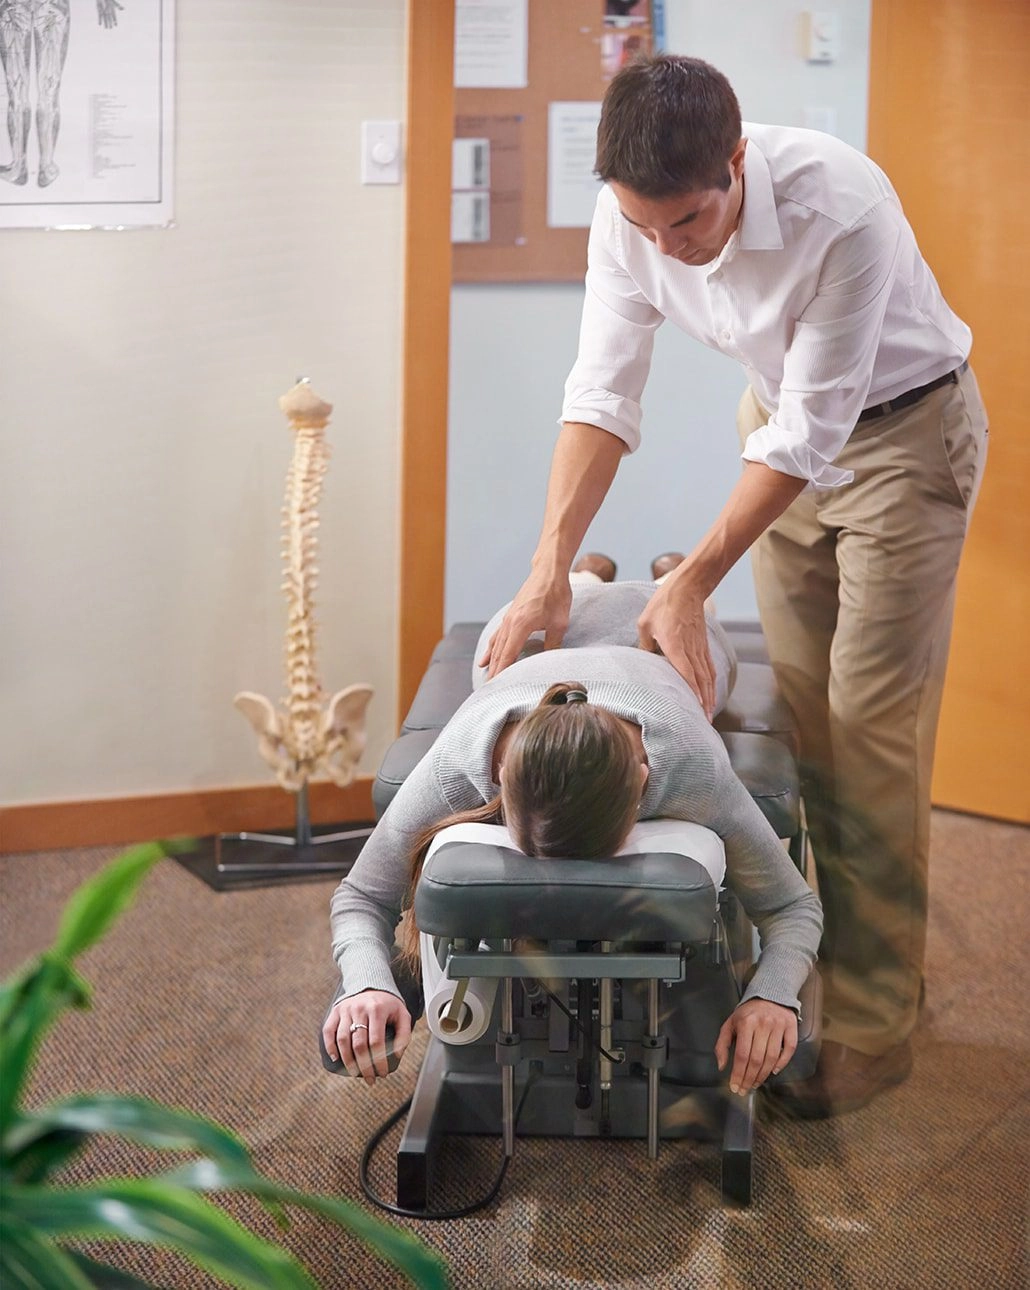 Benefits of Chiropractic Adjustment